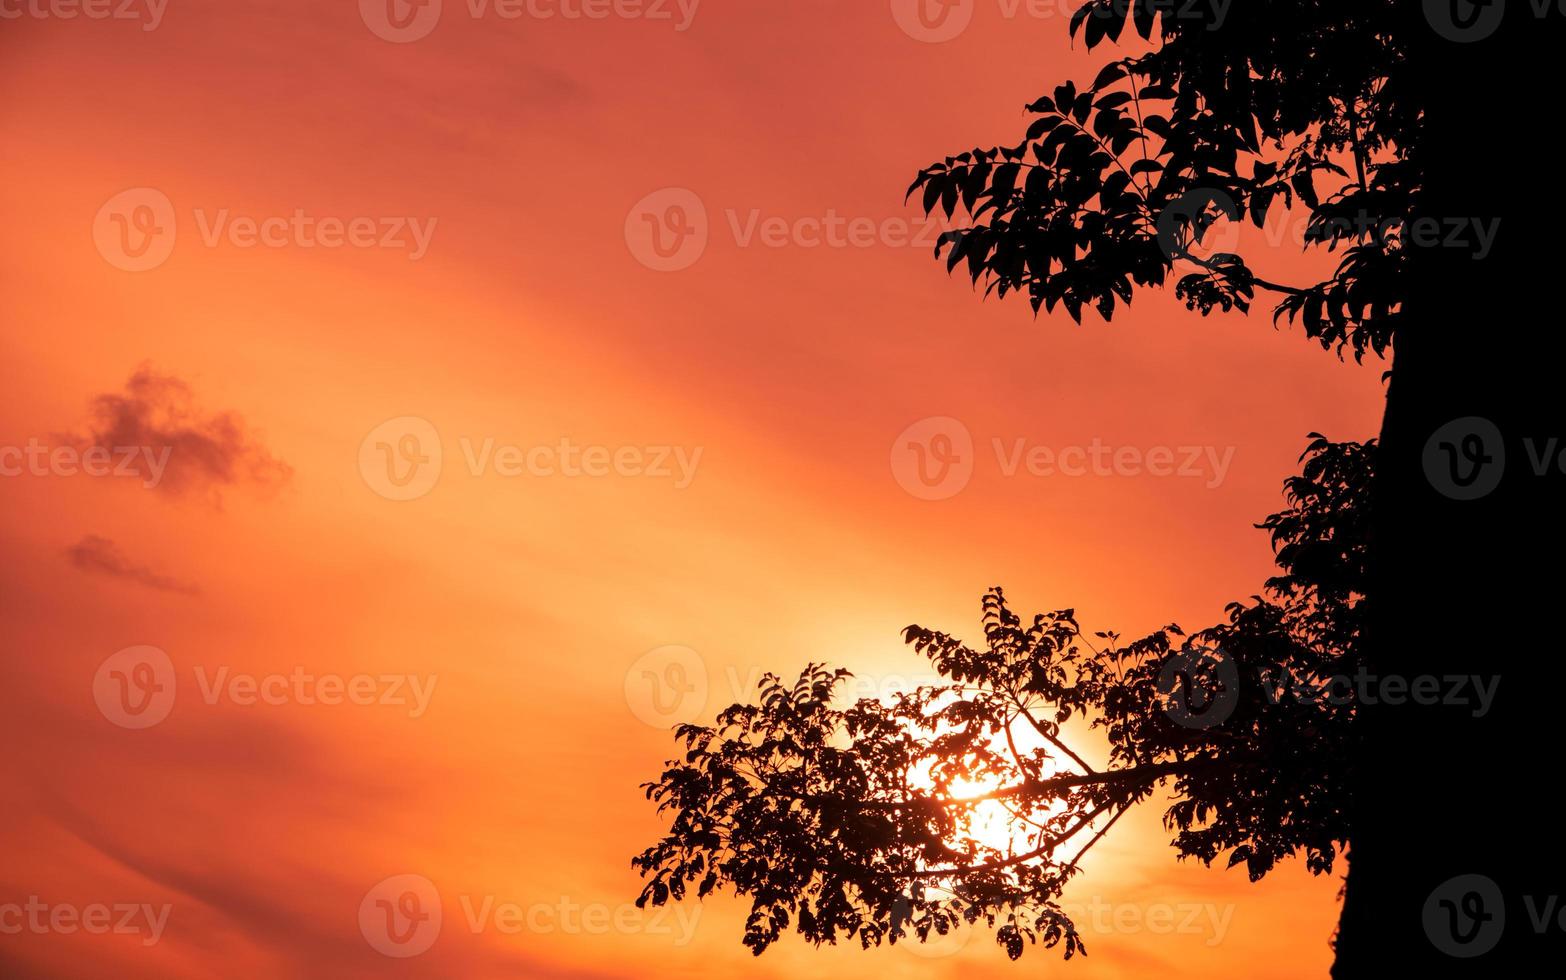 fond de silhouette de branches d'arbres avec ciel coucher de soleil orange photo